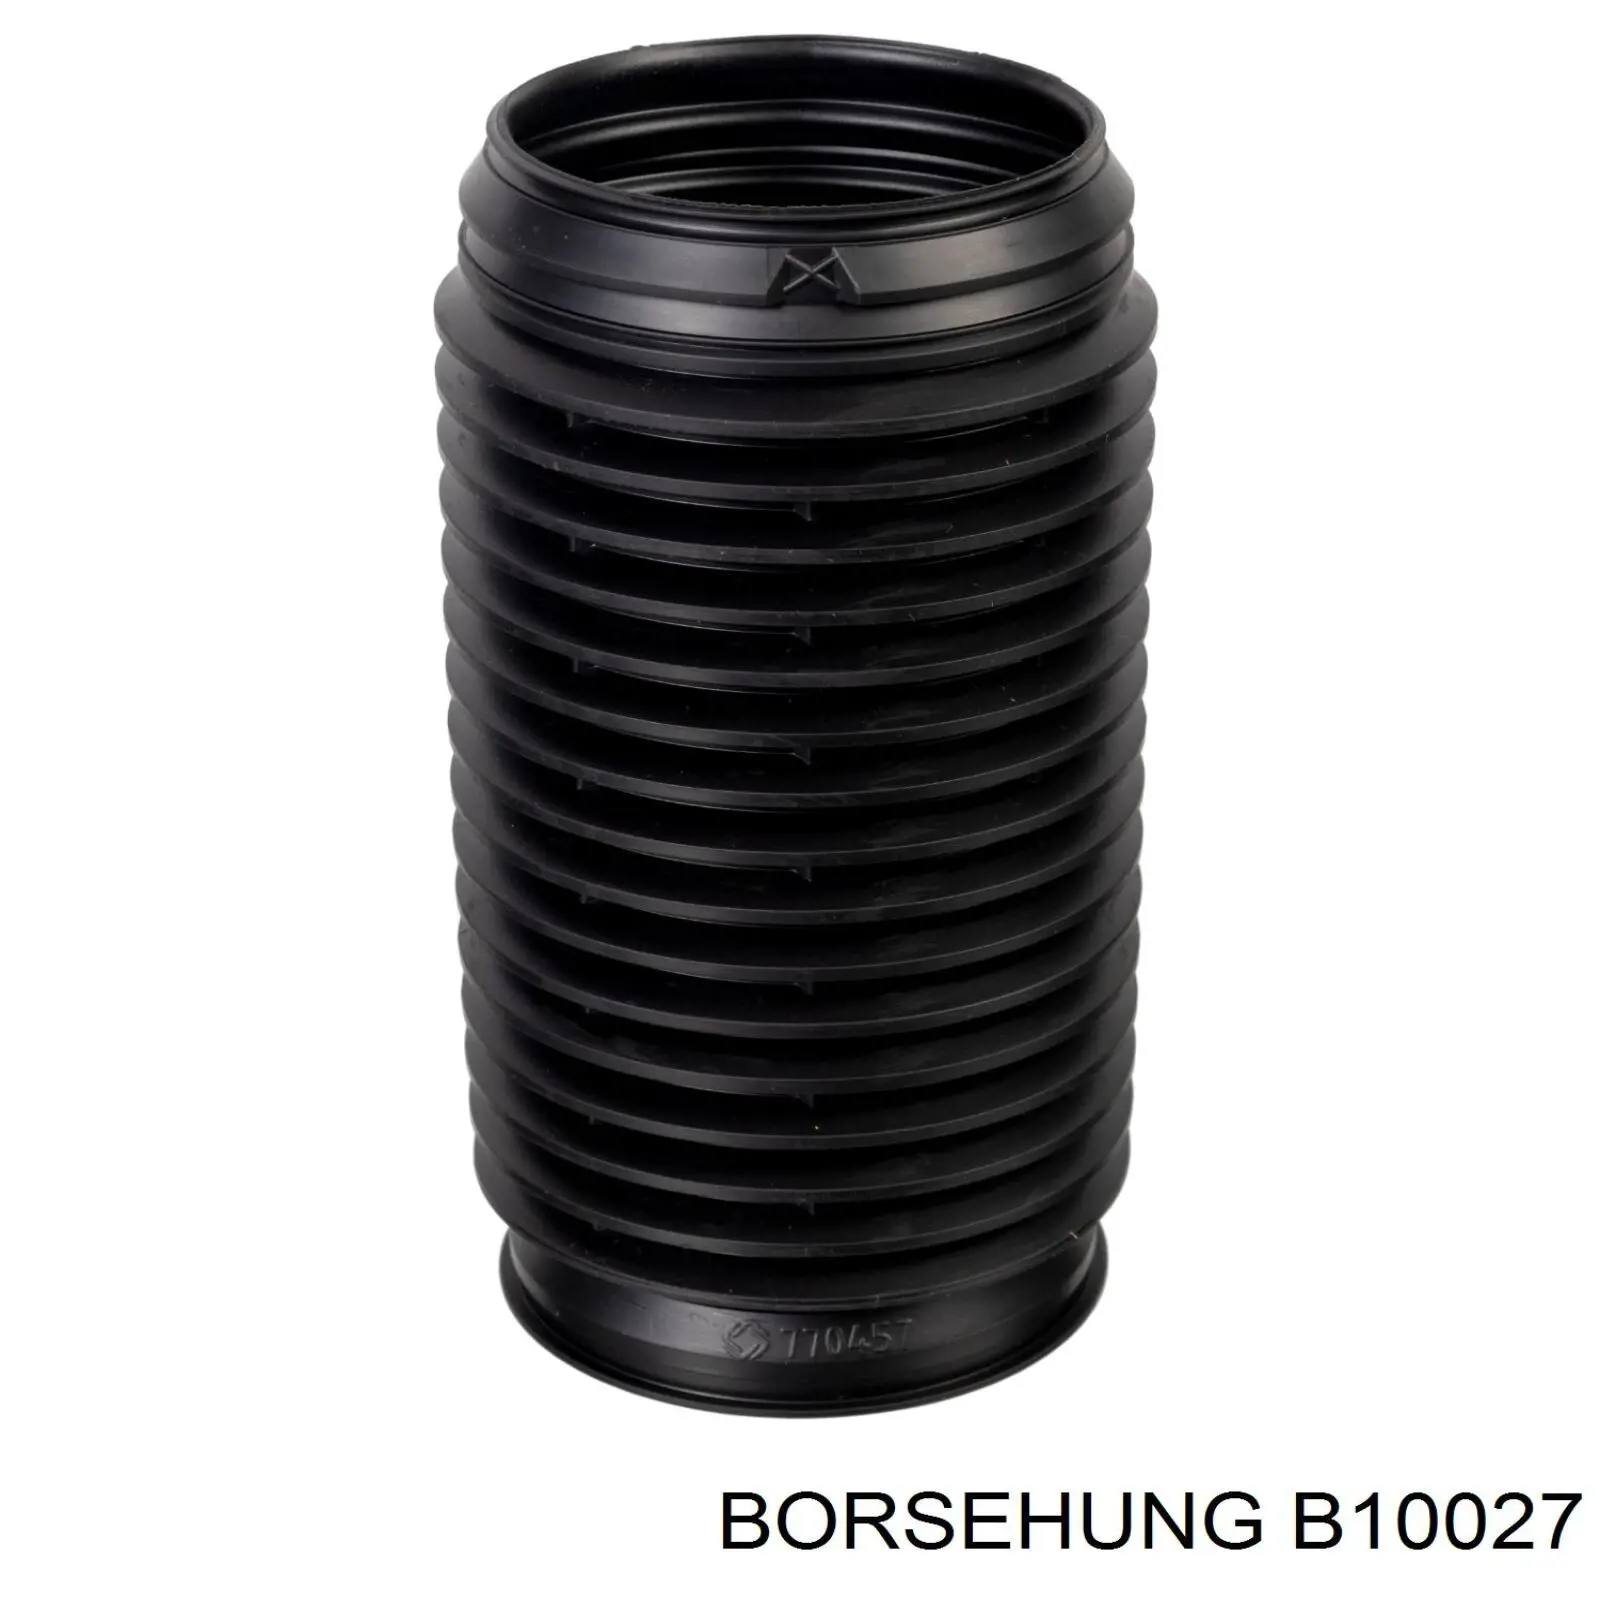 B10027 Borsehung pára-choque (grade de proteção de amortecedor dianteiro + bota de proteção)